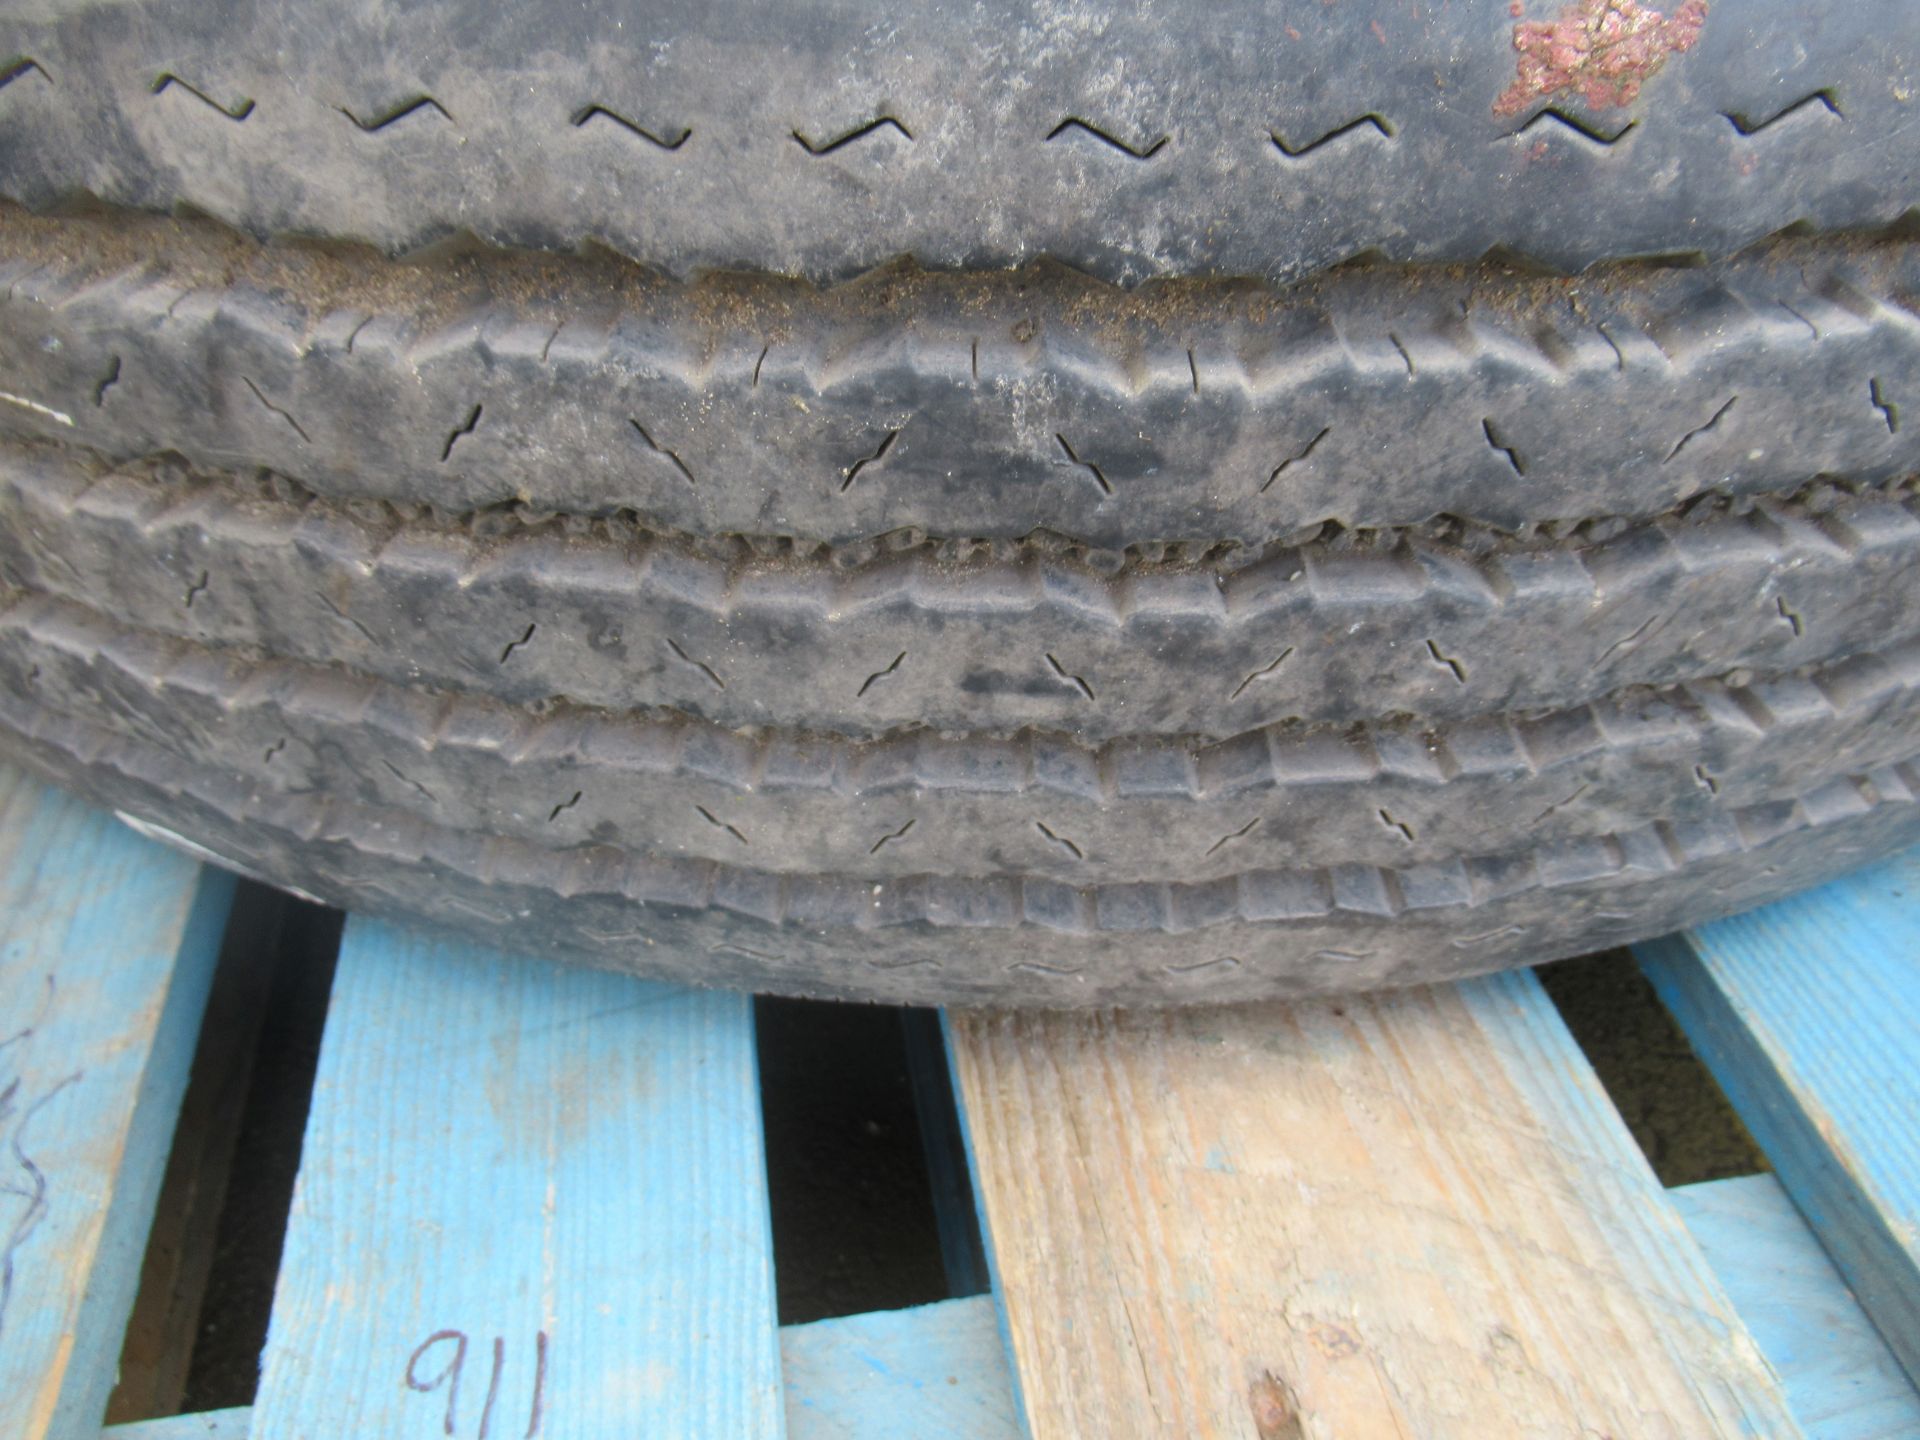 3x Partworn Tyres (275/70R/22.5, 275/80R/22.5, 275/80R/22.5) - Image 6 of 6